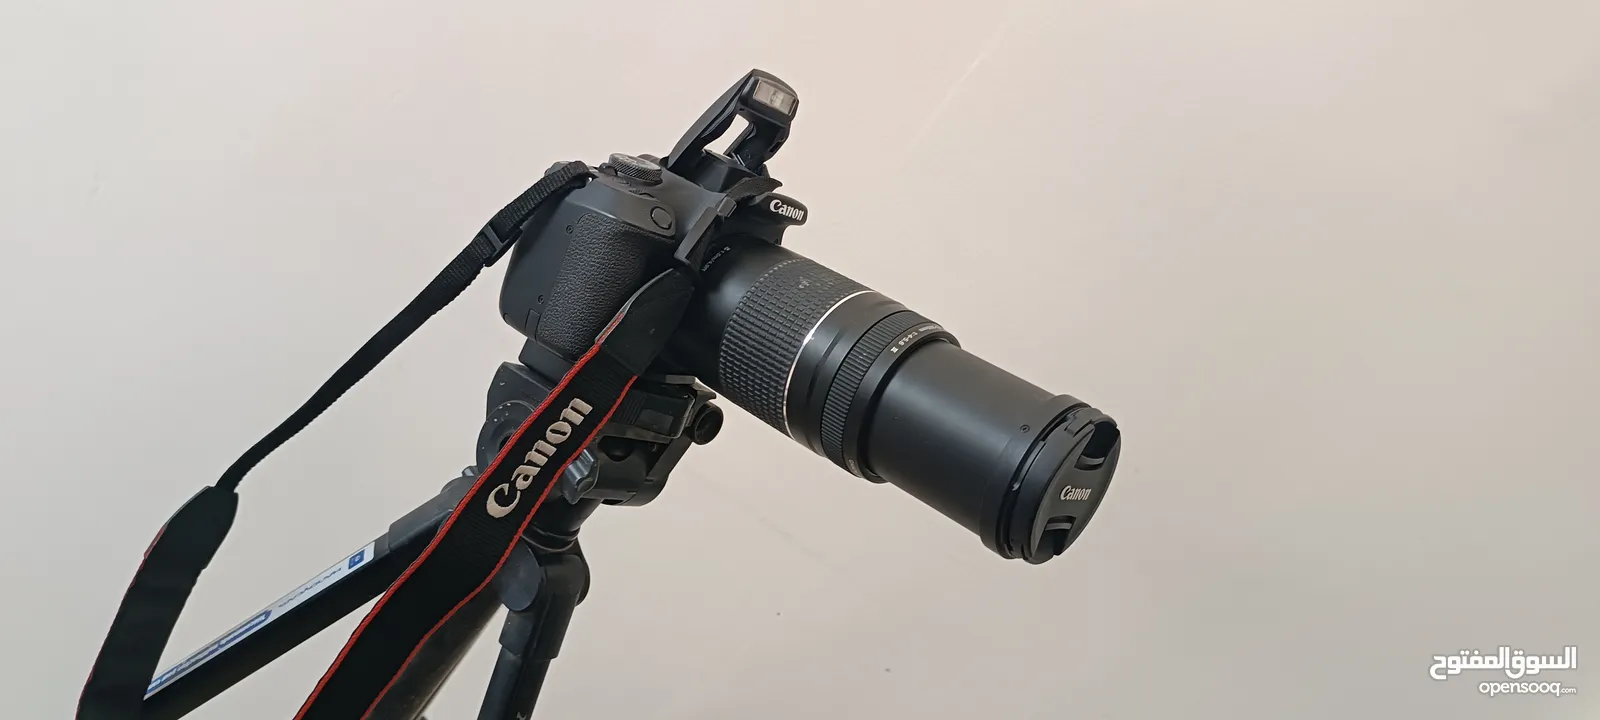 كاميرا كانون D2000 مع عدسة 75-300 للبيع بسعر مغري جداااا